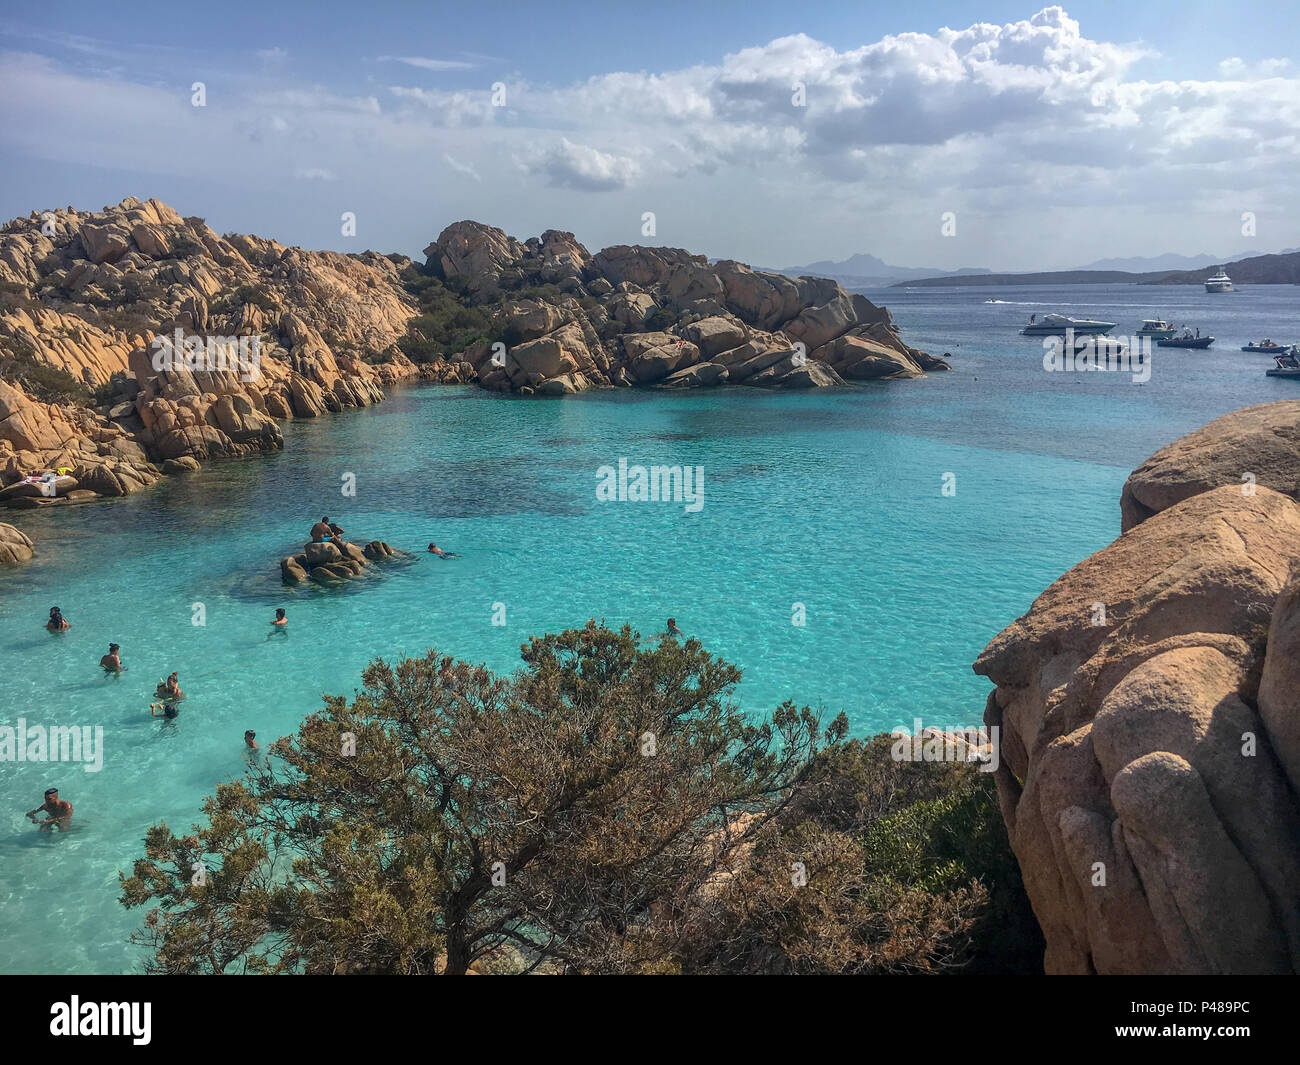 Caprera, Italie - septembre 8, 2017 : la vie à la plage avec des gens assis sur des pierres à Spiaggia Cala Coticcio sur l'île italienne de Caprera Banque D'Images